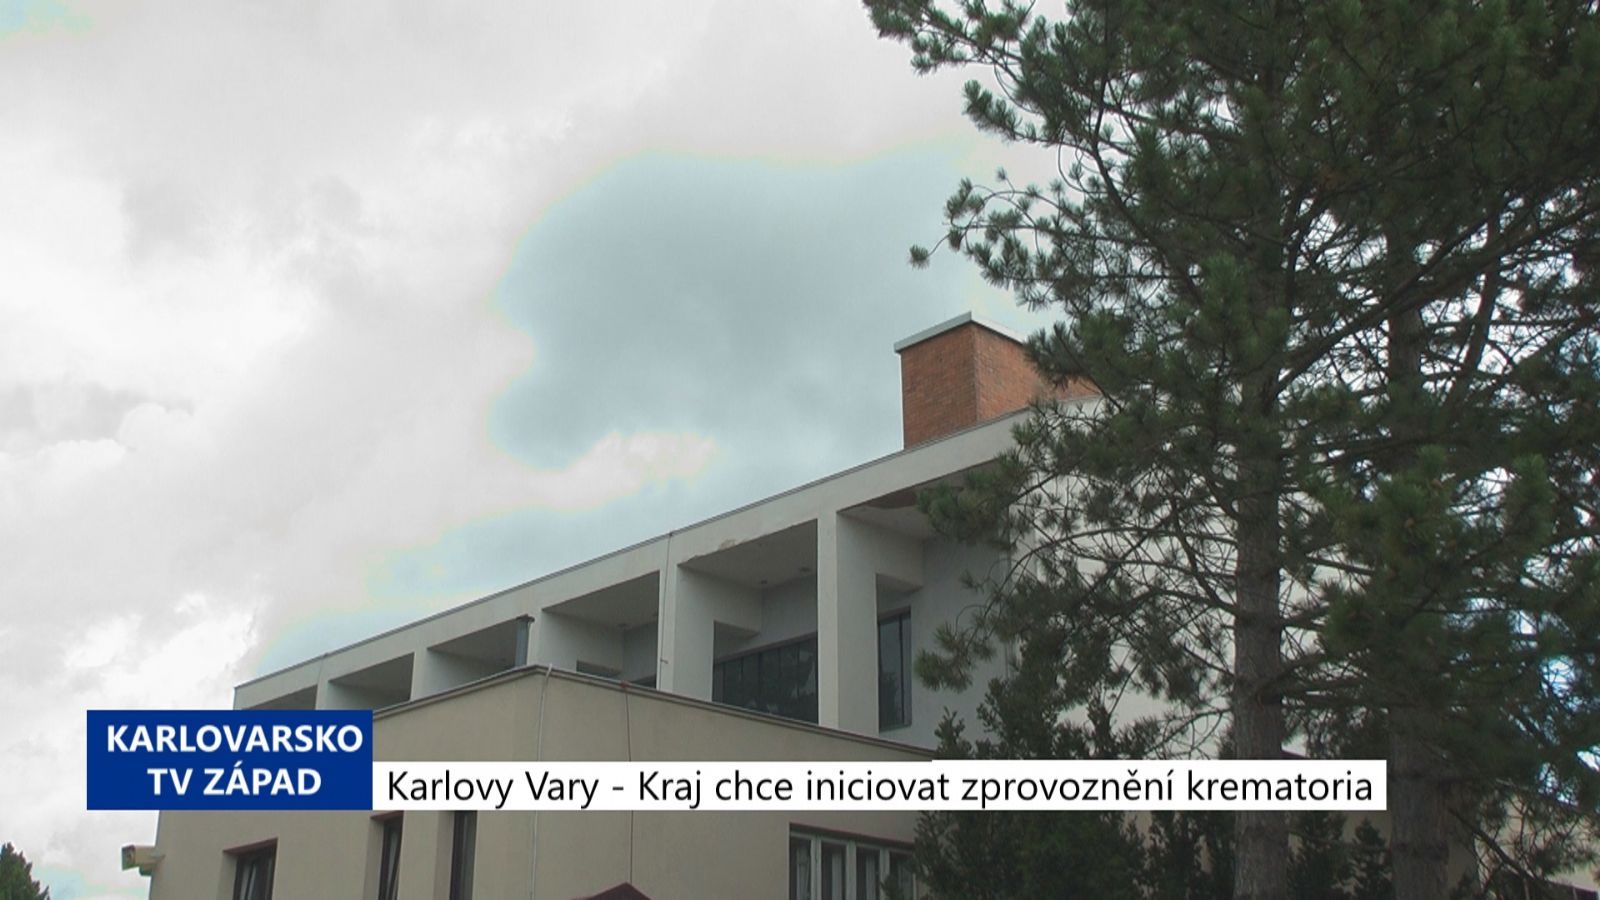 Karlovy Vary: Kraj chce iniciovat zprovoznění krematoria (TV Západ)